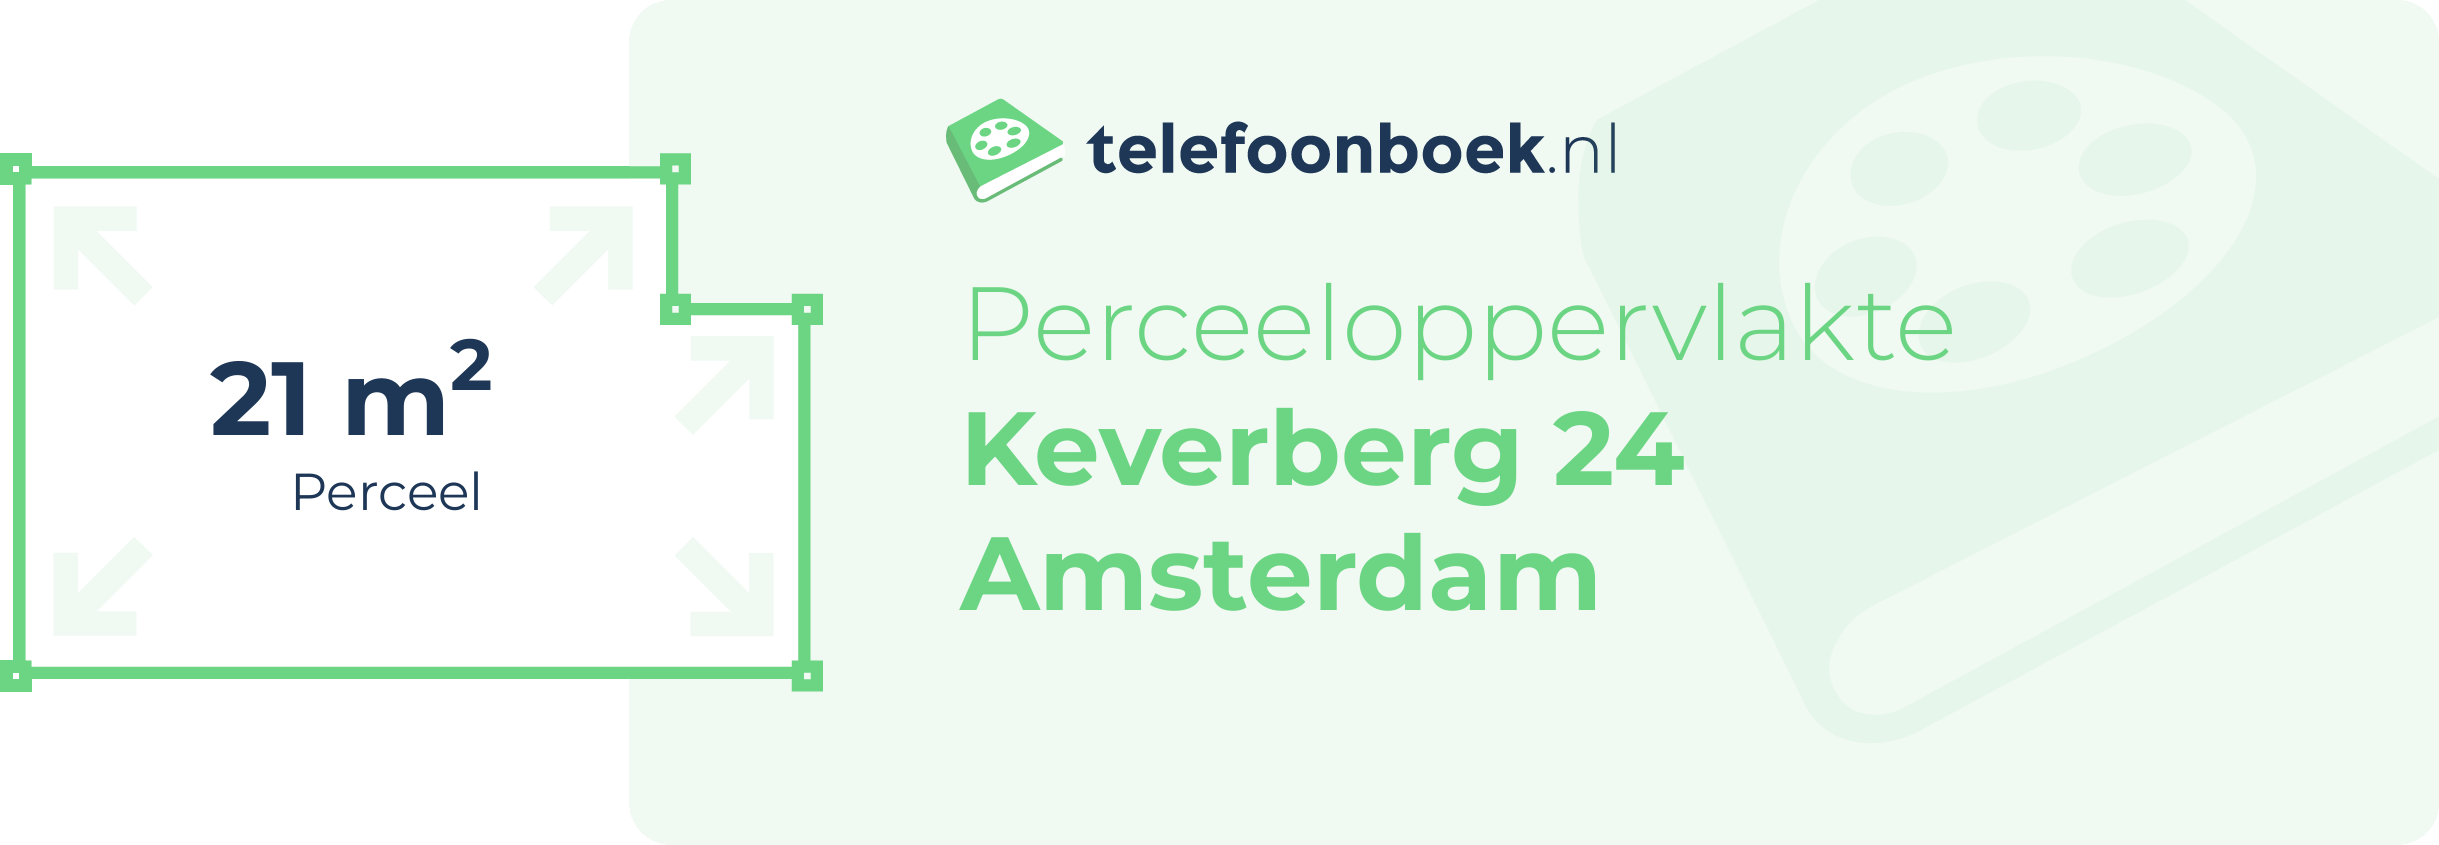 Perceeloppervlakte Keverberg 24 Amsterdam